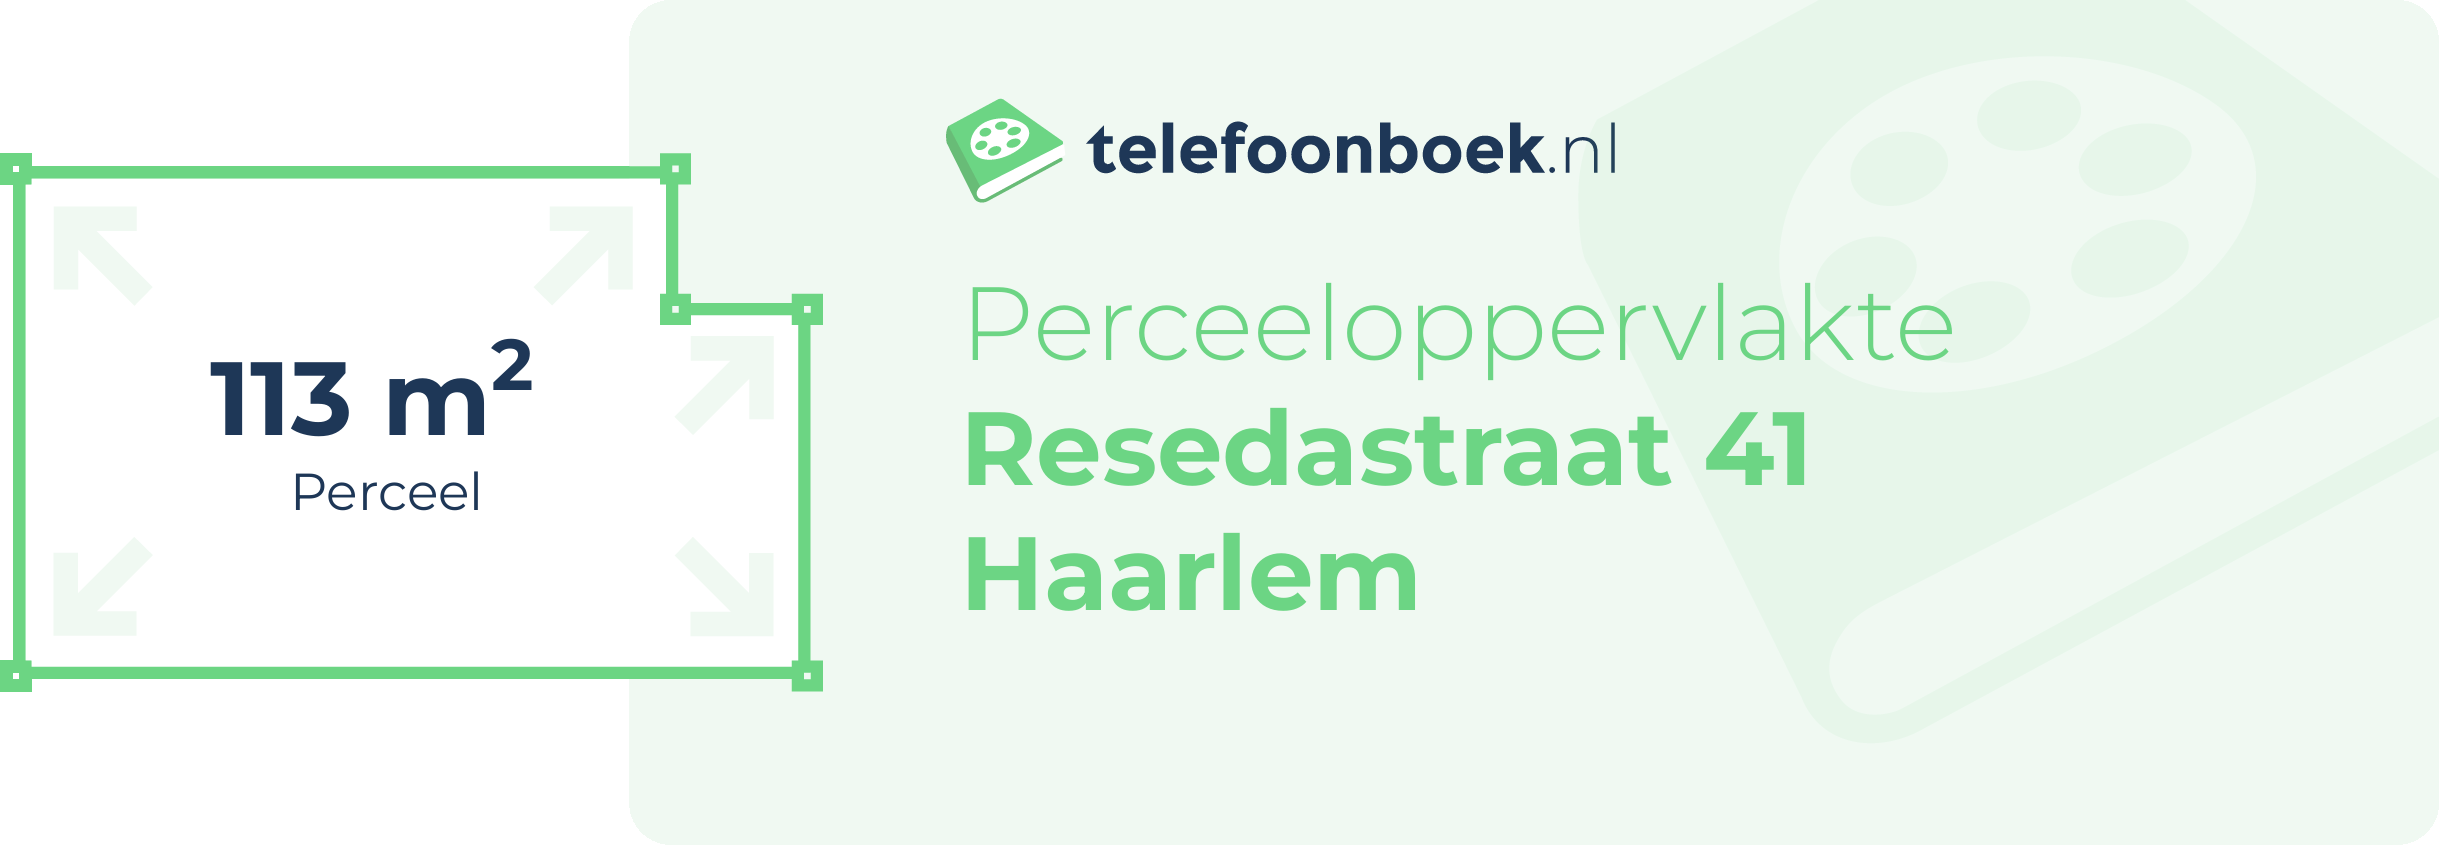 Perceeloppervlakte Resedastraat 41 Haarlem